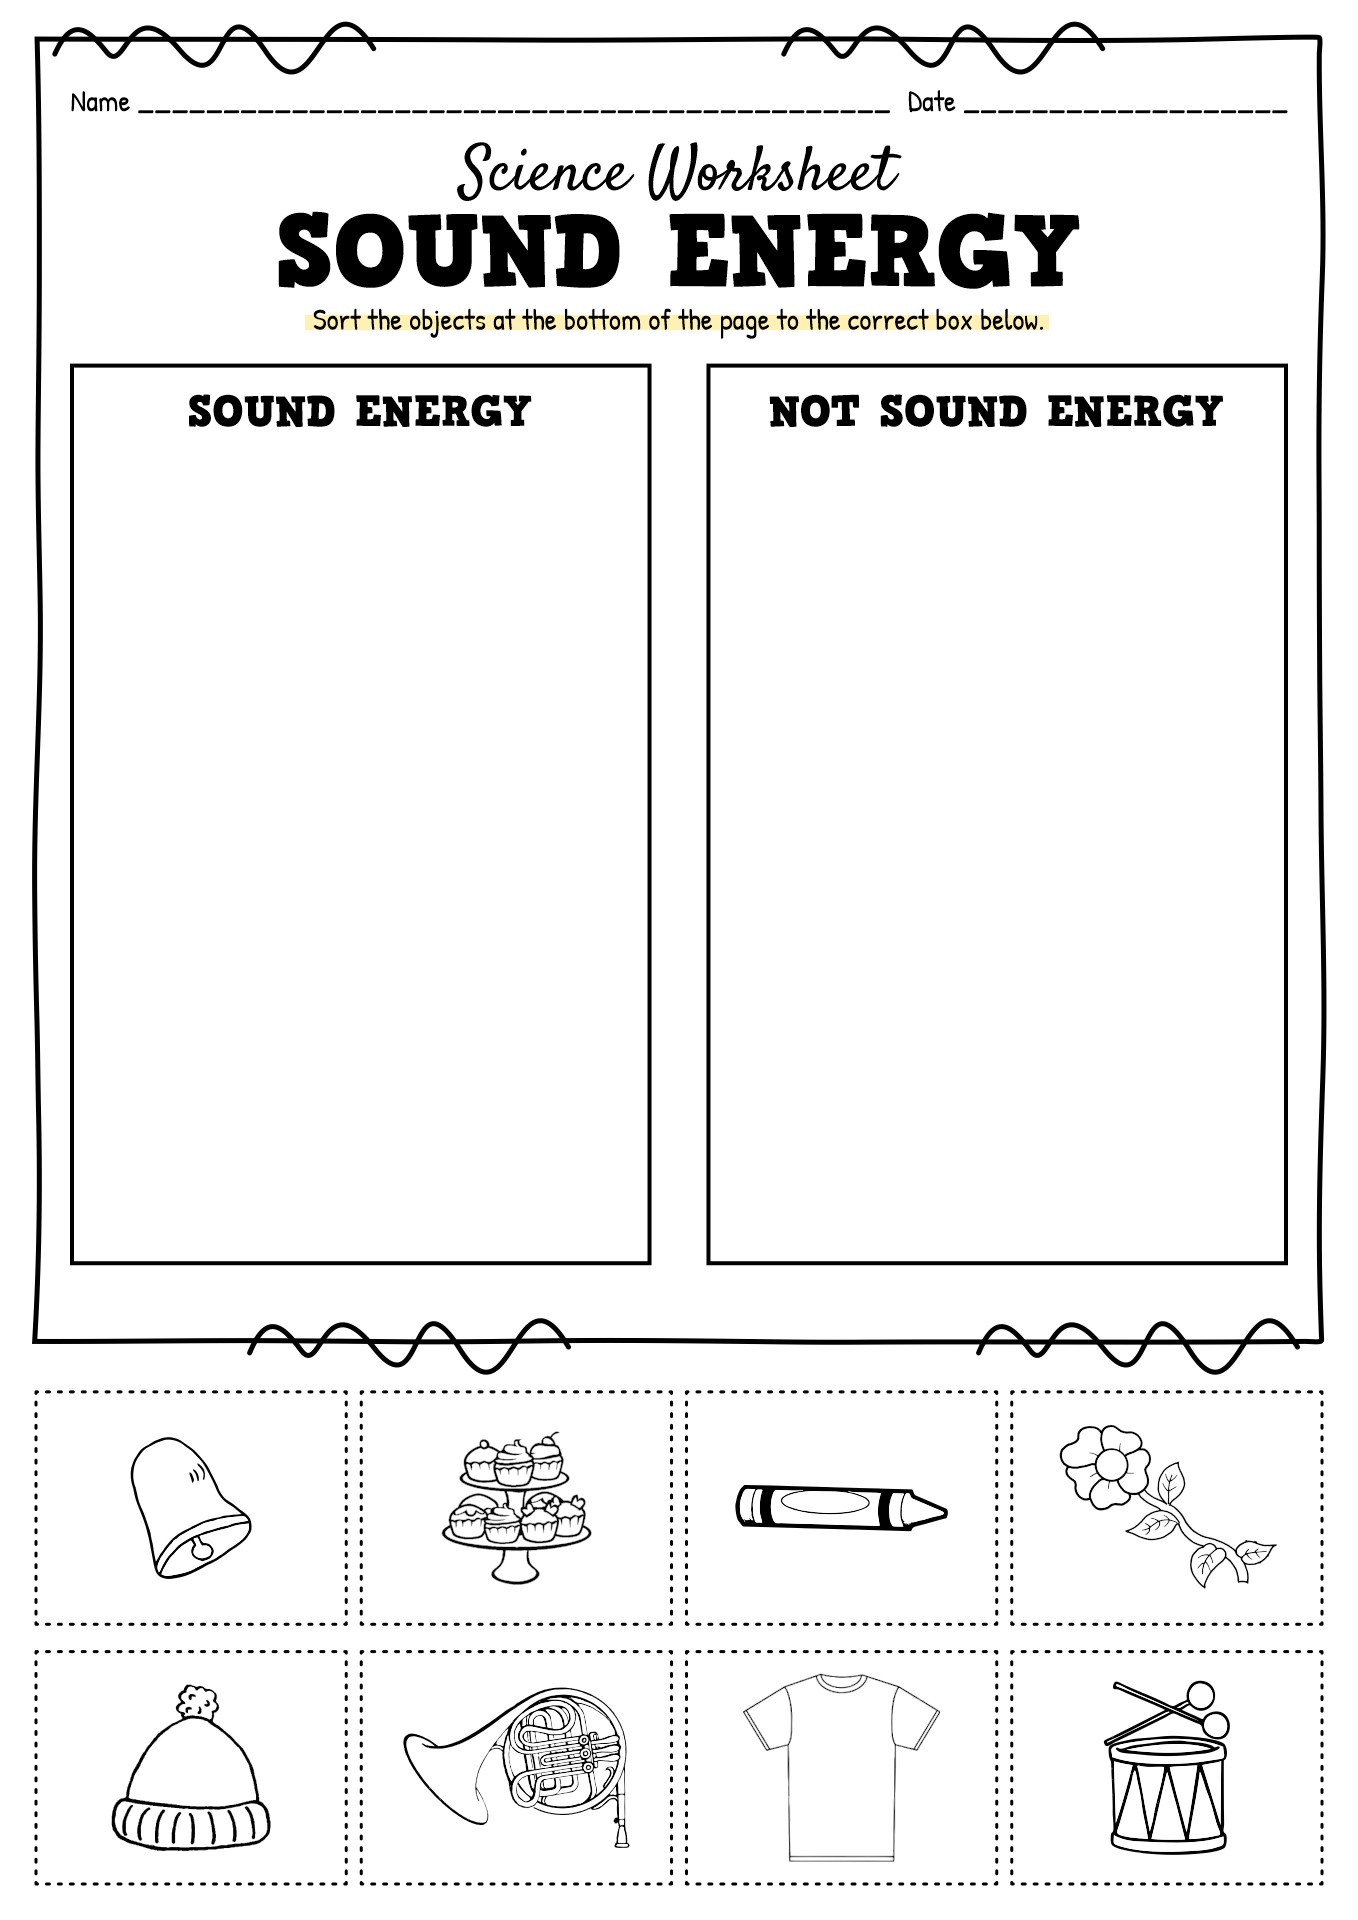 Sound Energy Worksheets 2nd Grade Image